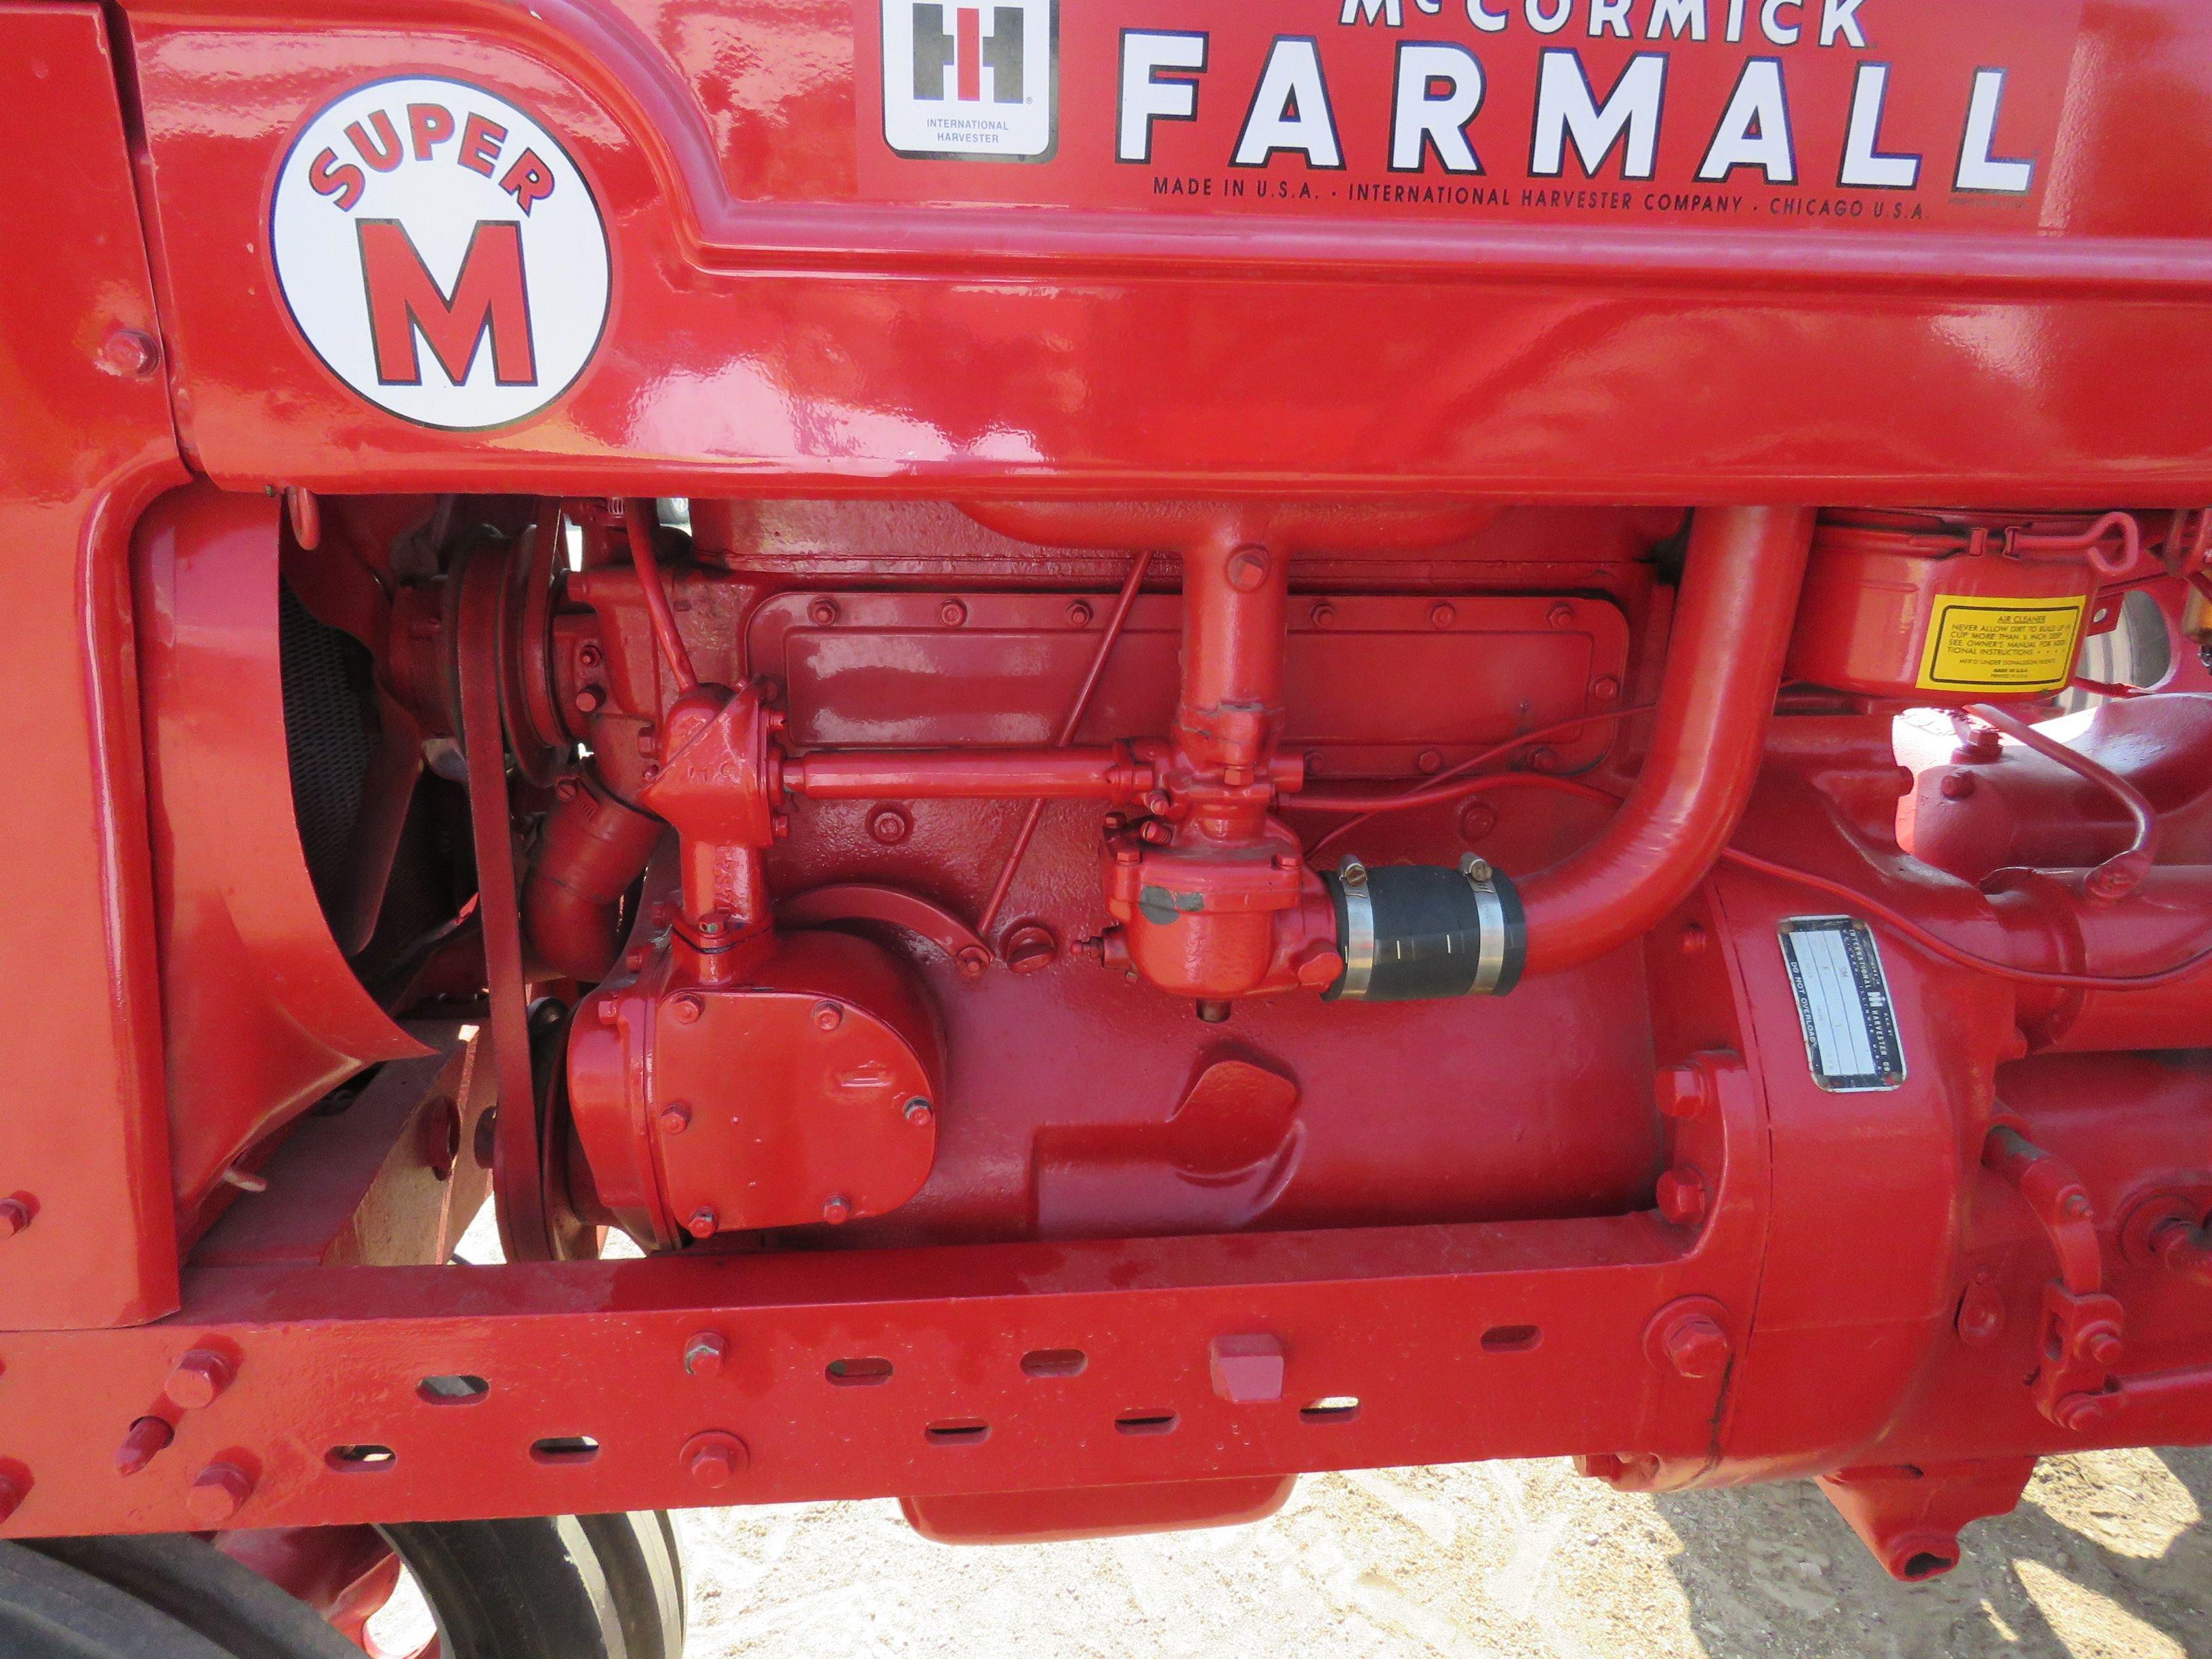 1952 Farmall Super M Tractor